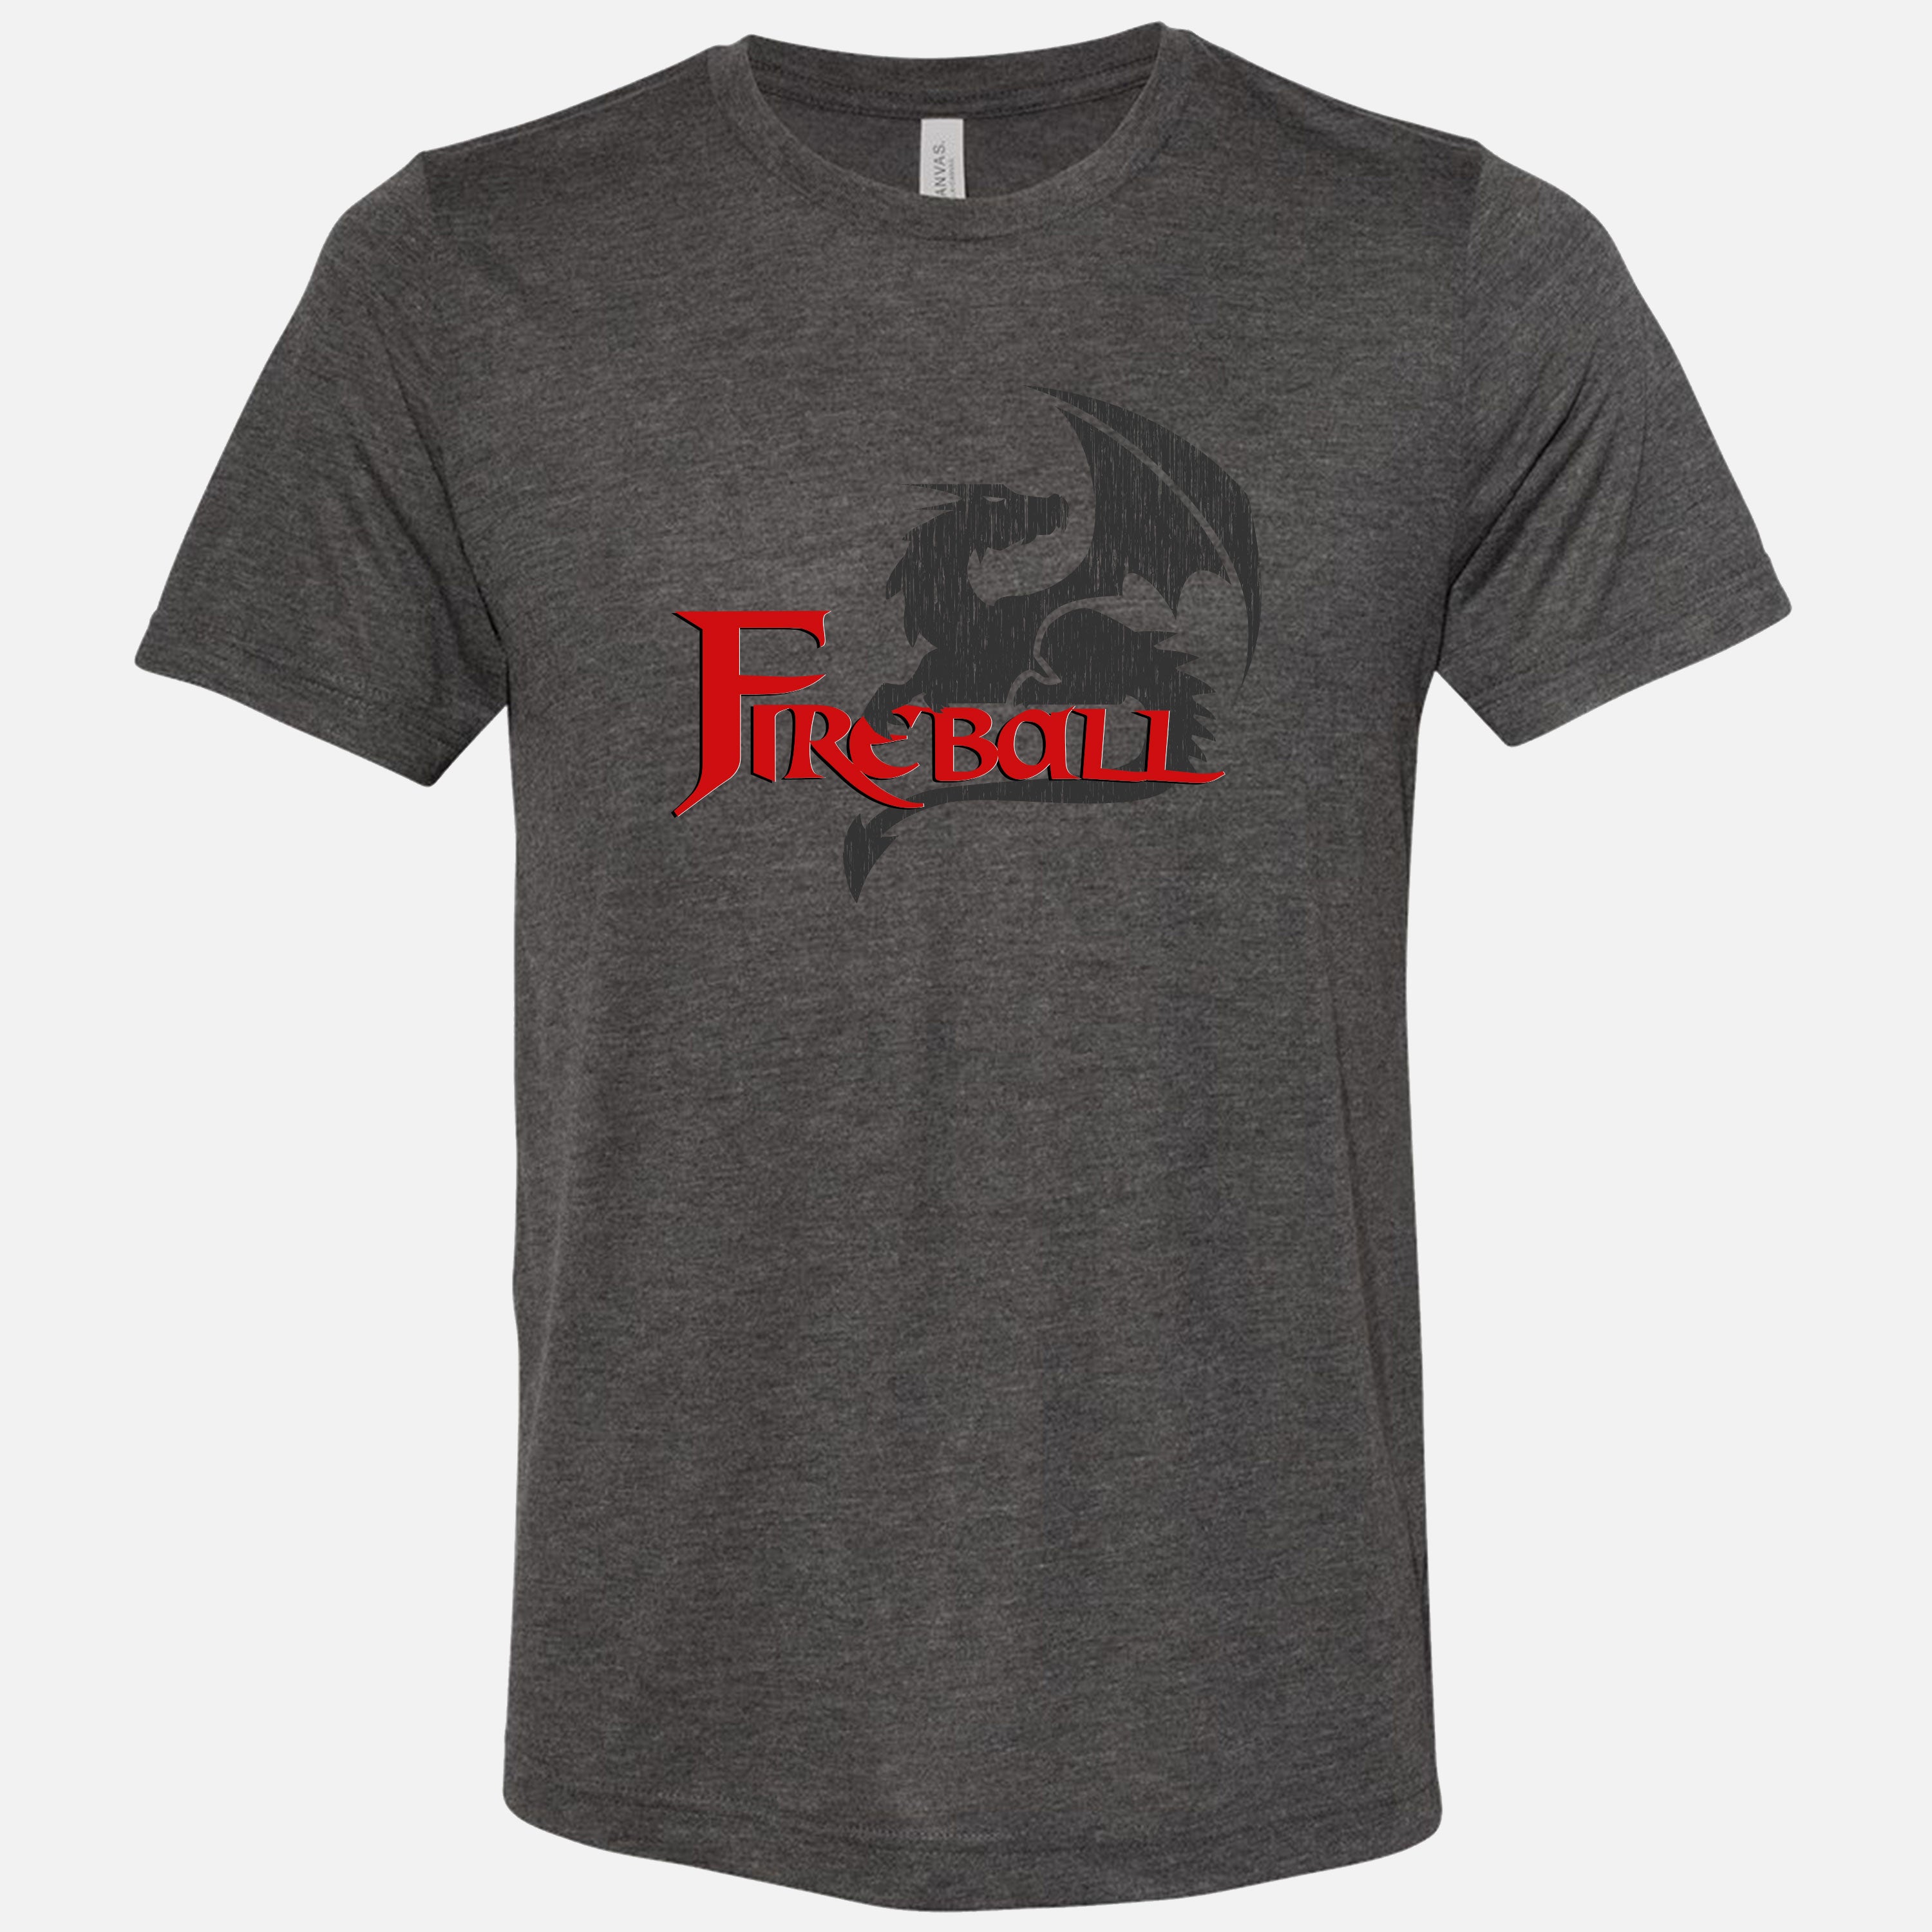 Fireball Shirt (Classic Logo)